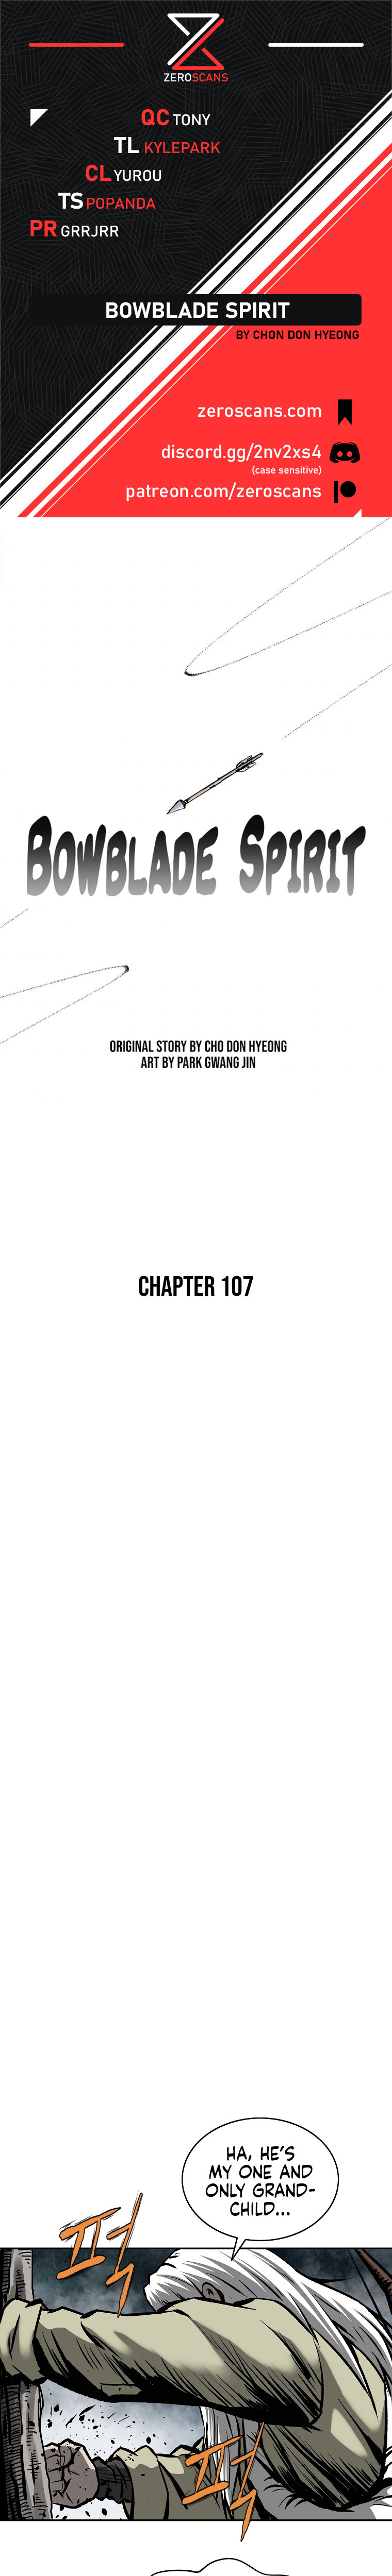 Bowblade Spirit - Chapter 107 Page 1